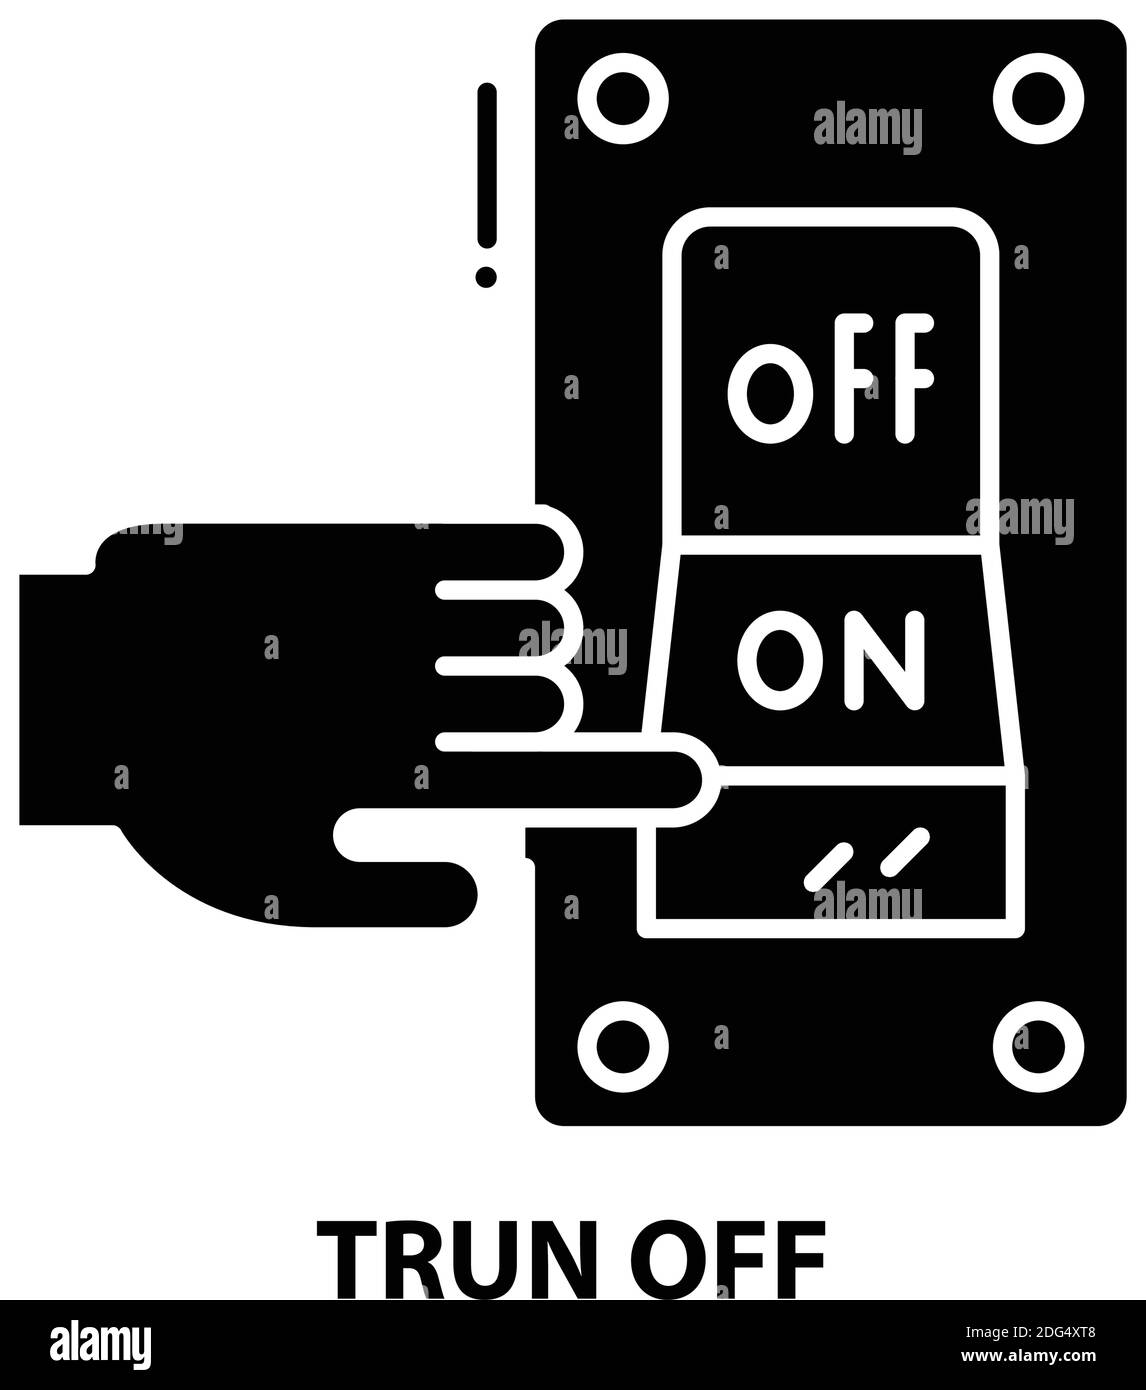 icona trun off, segno vettoriale nero con tratti modificabili, illustrazione del concetto Illustrazione Vettoriale